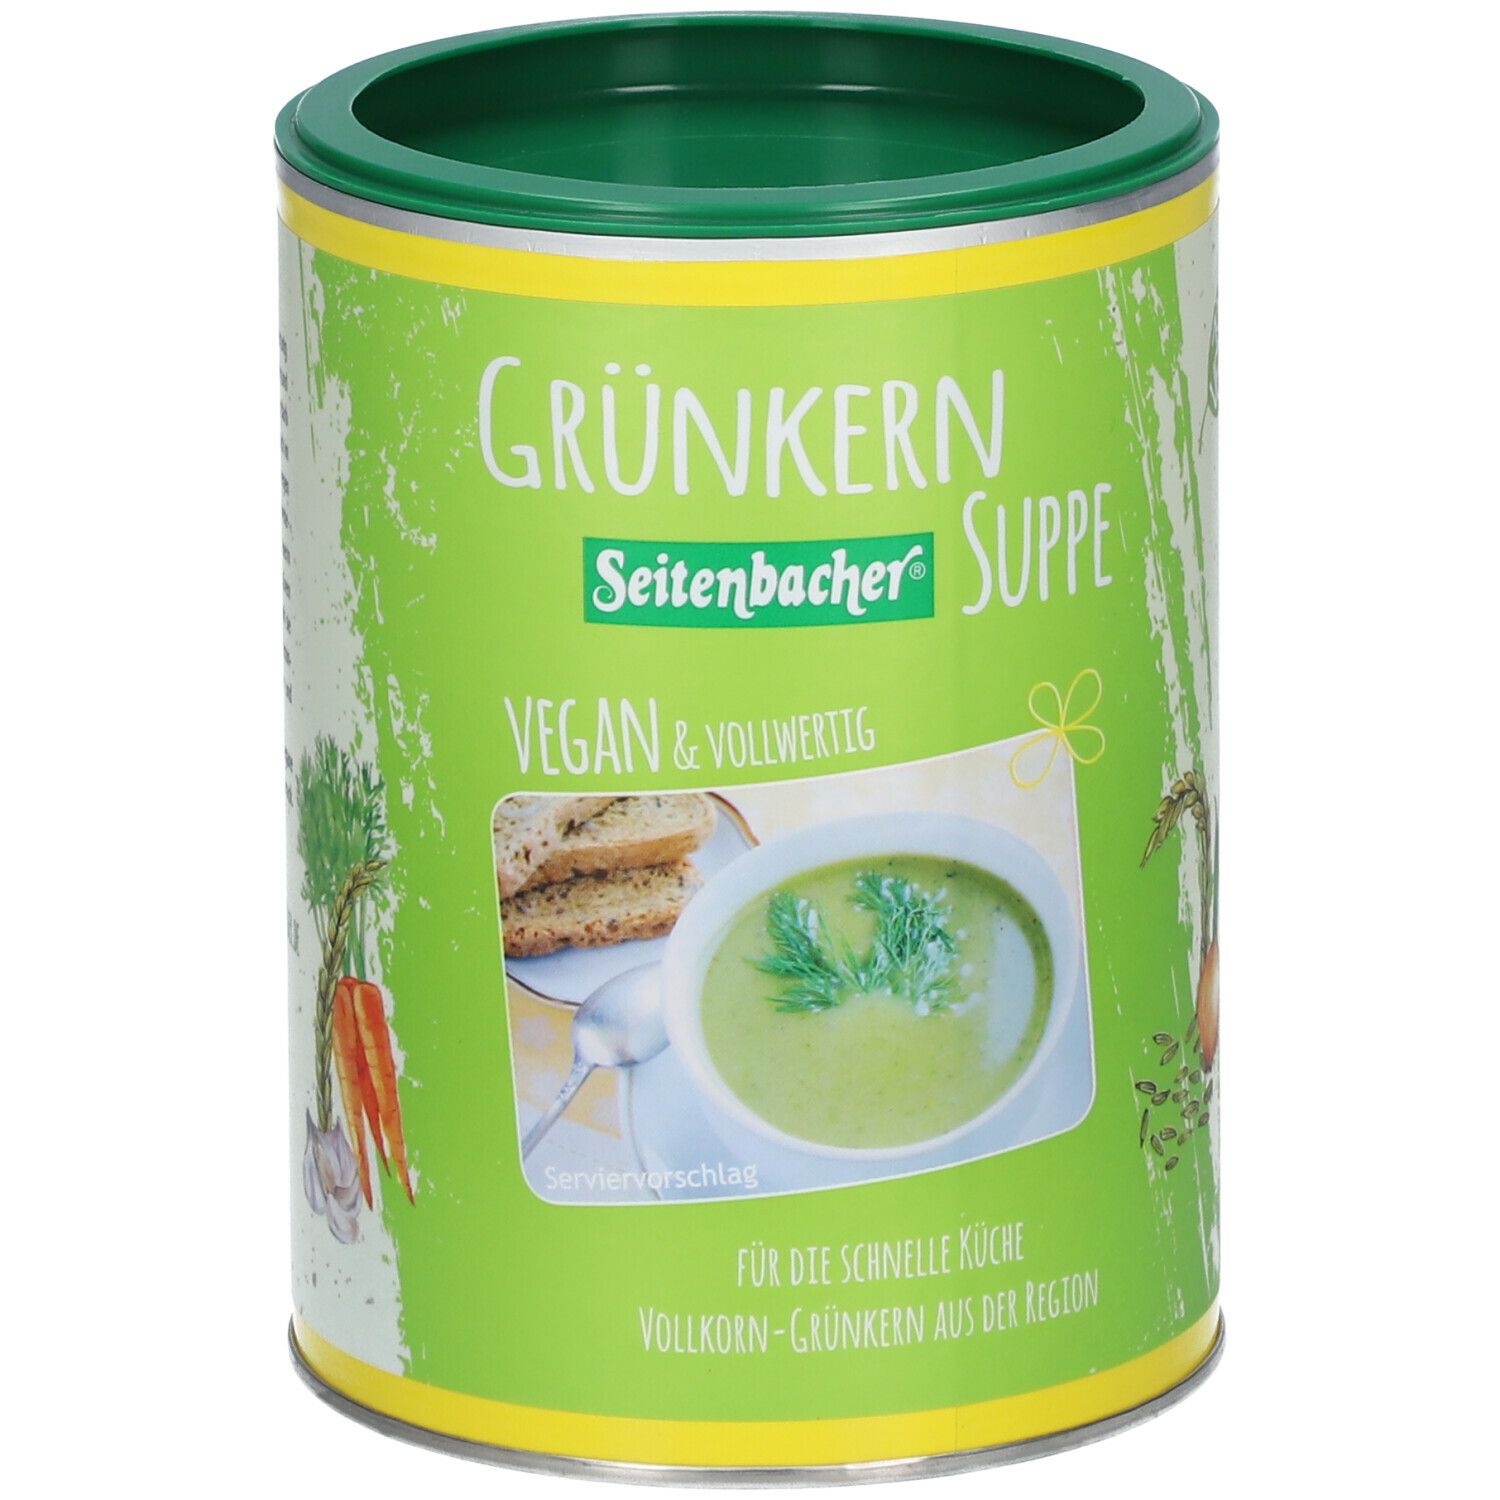 Seitenbacher® Grünkern Suppe